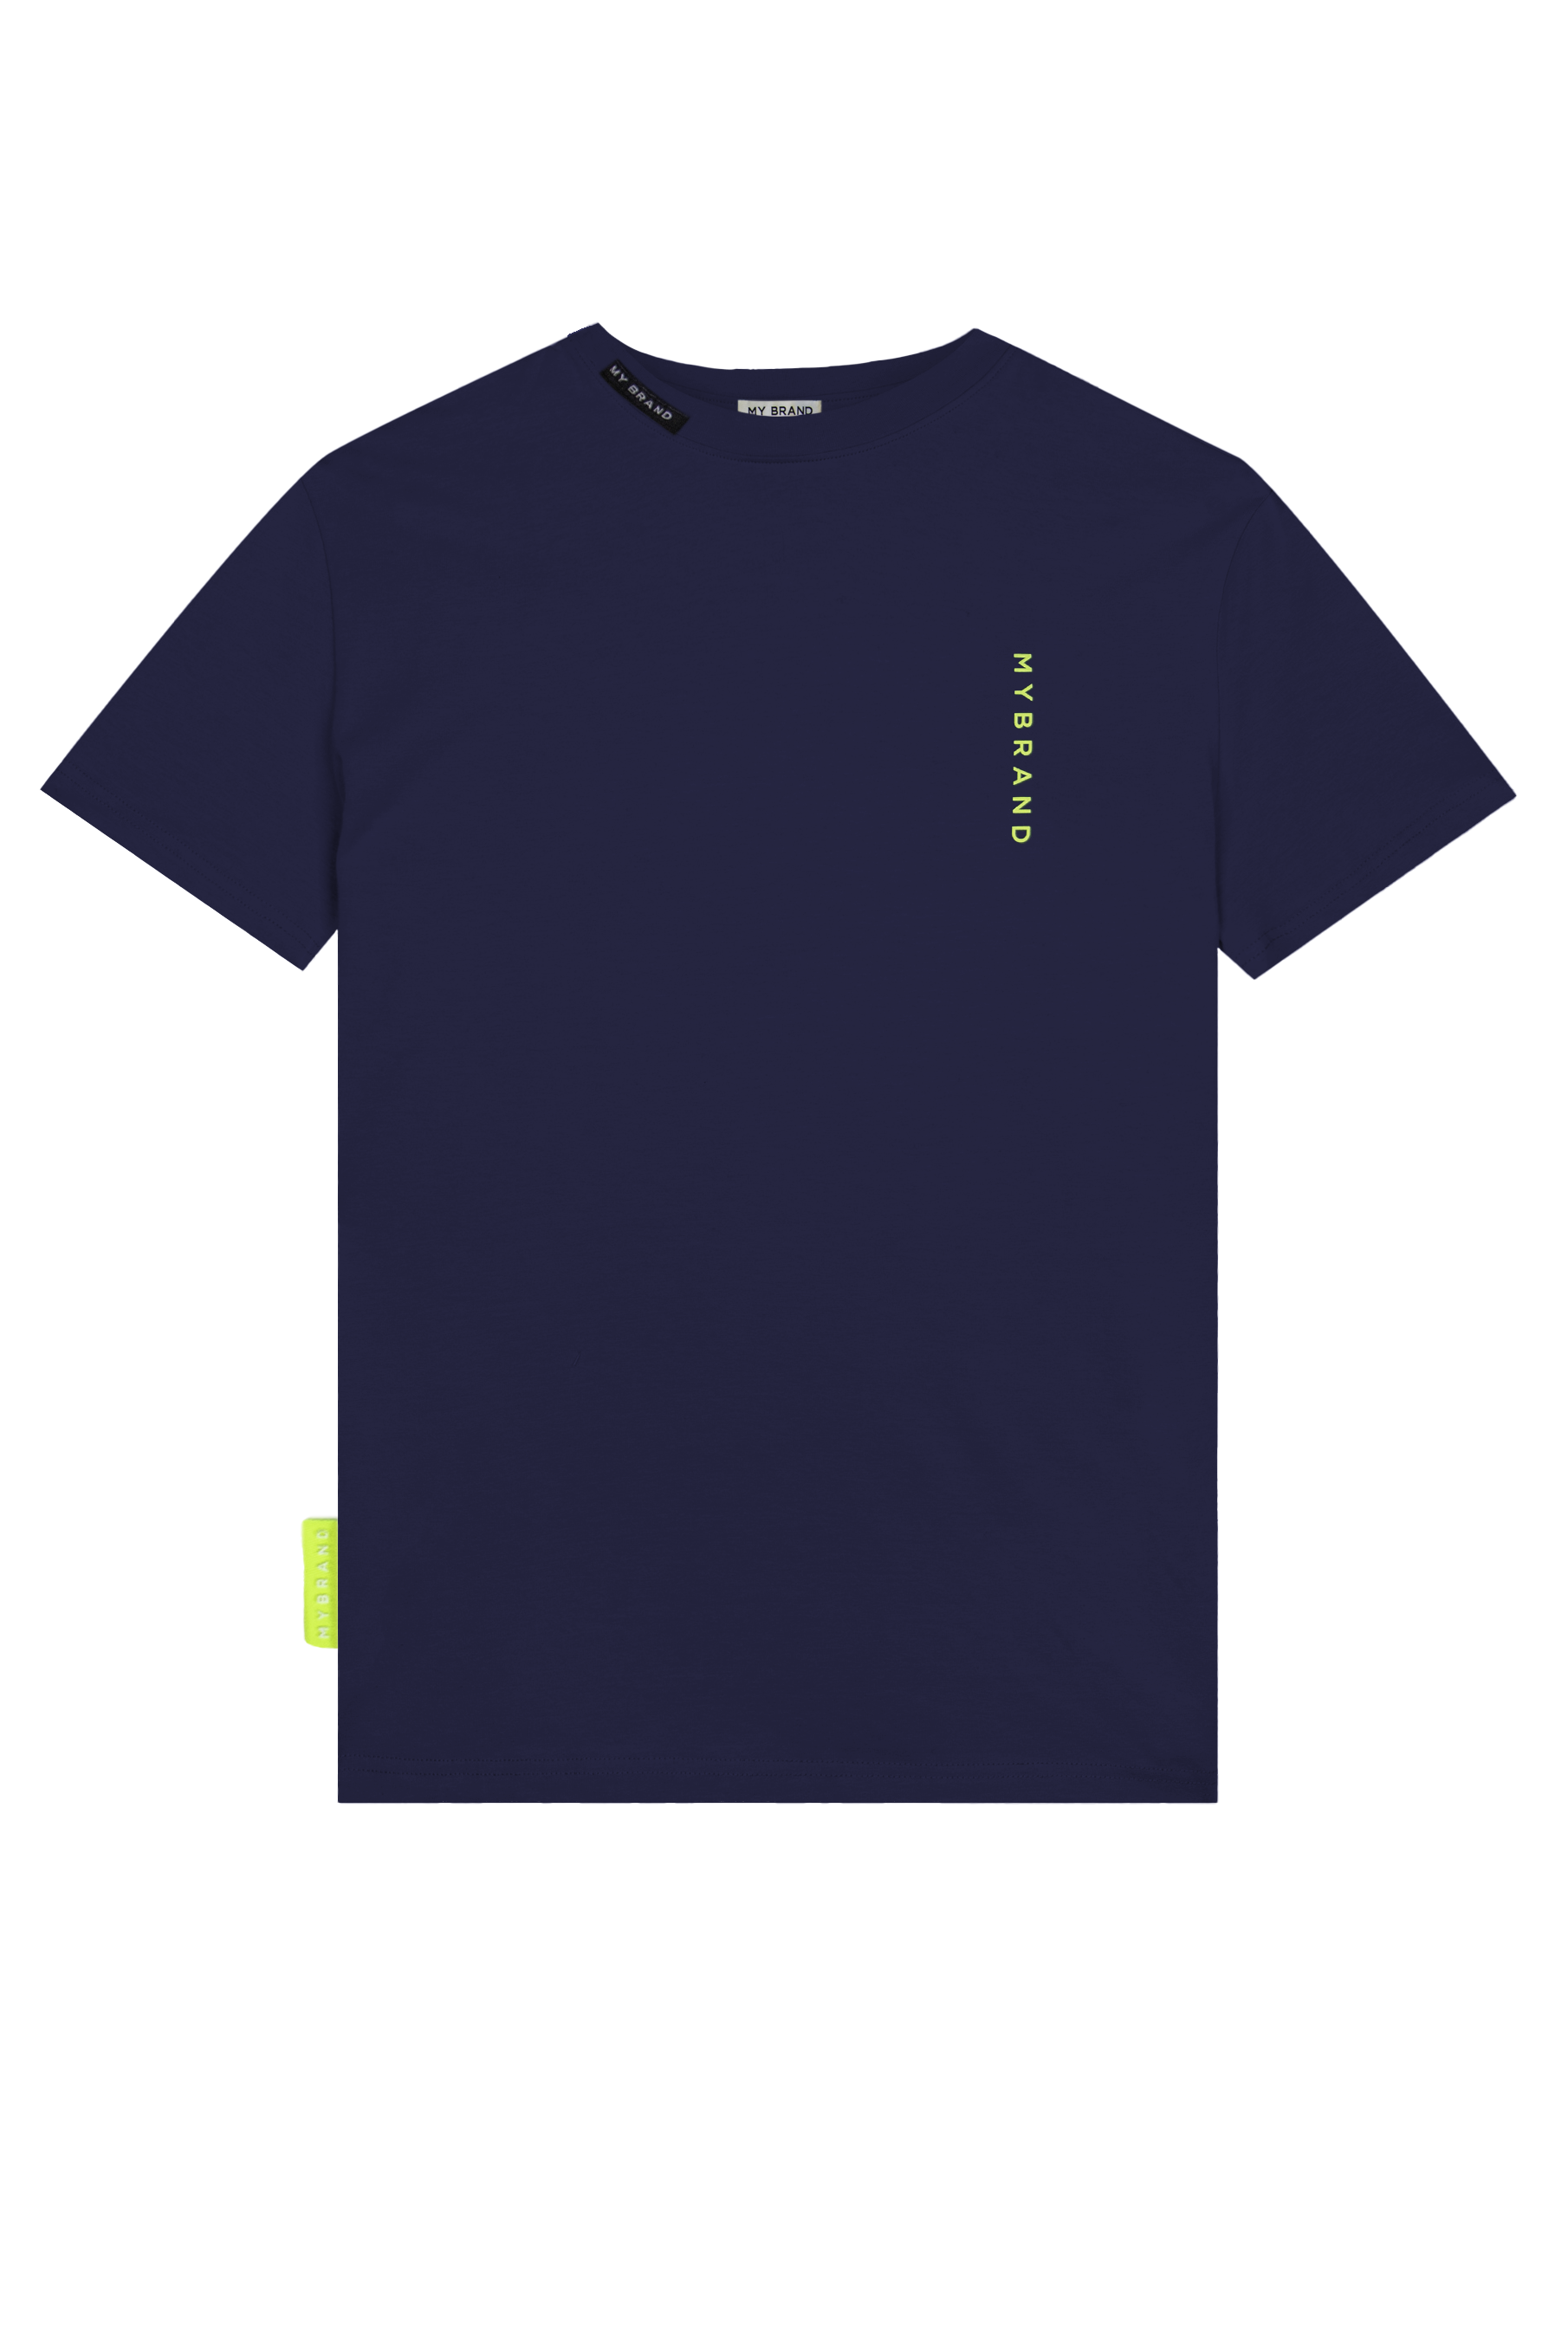 Basic Swim Capsule Tshirt Navy Neon